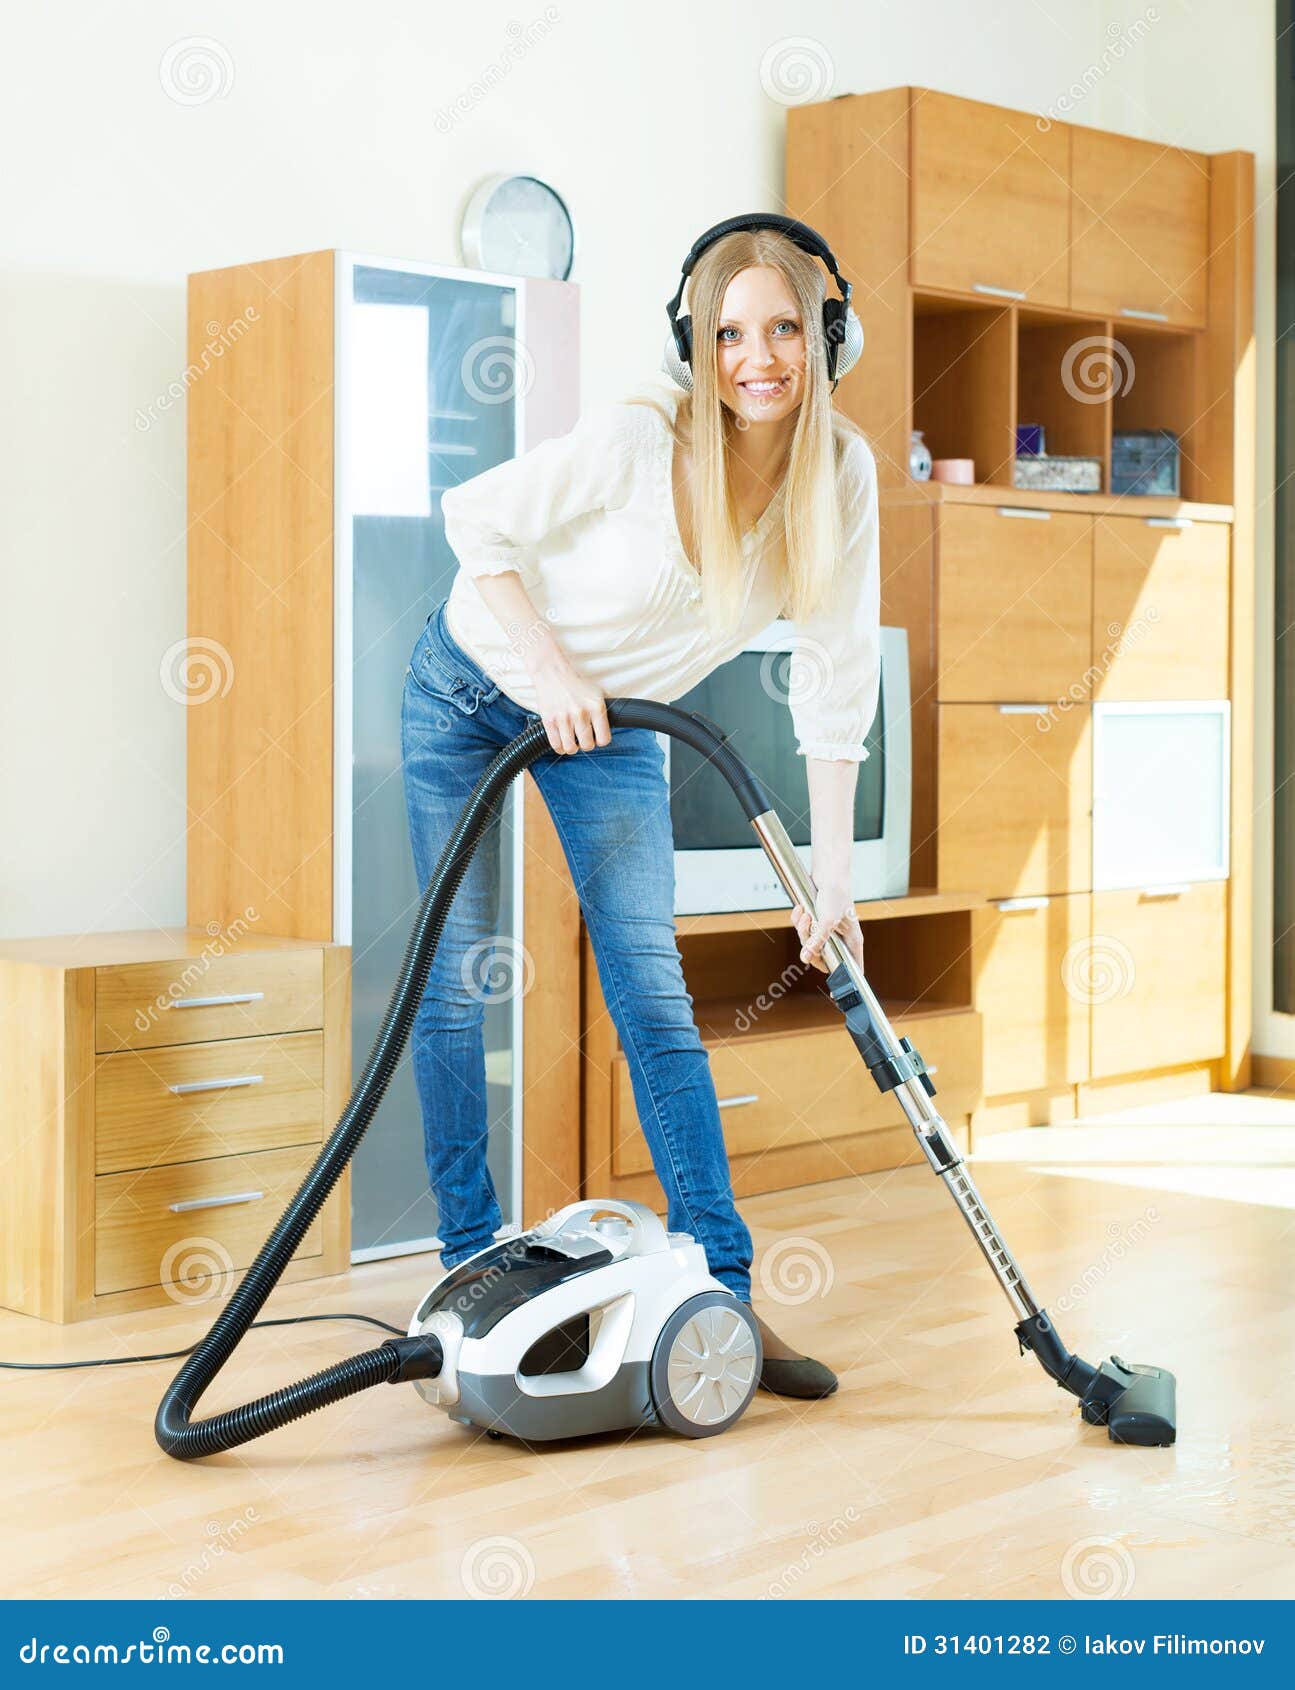 blonde-woman-headphones-cleaning-vacuum-cleaner-happy-parquet-floor-home-31401282.jpg